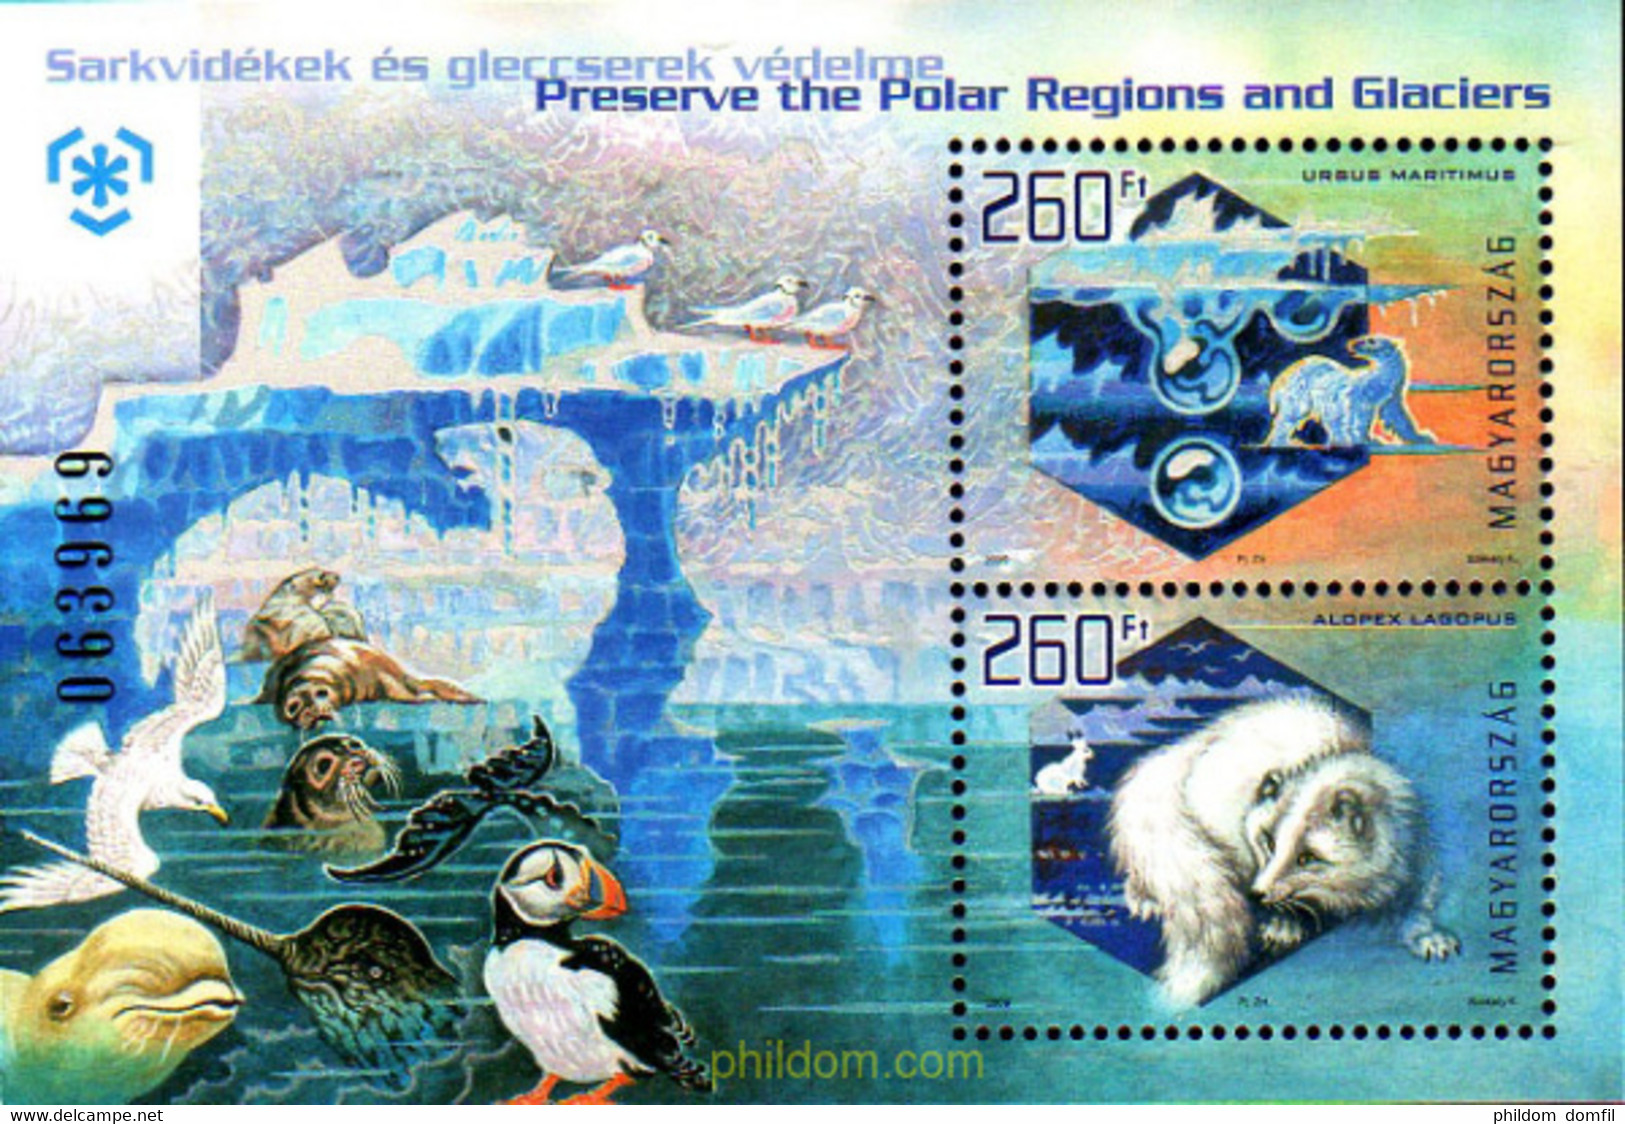 225250 MNH HUNGRIA 2009 PROTECCION A LOS GLACIARES Y REGIONES POLARES - Used Stamps